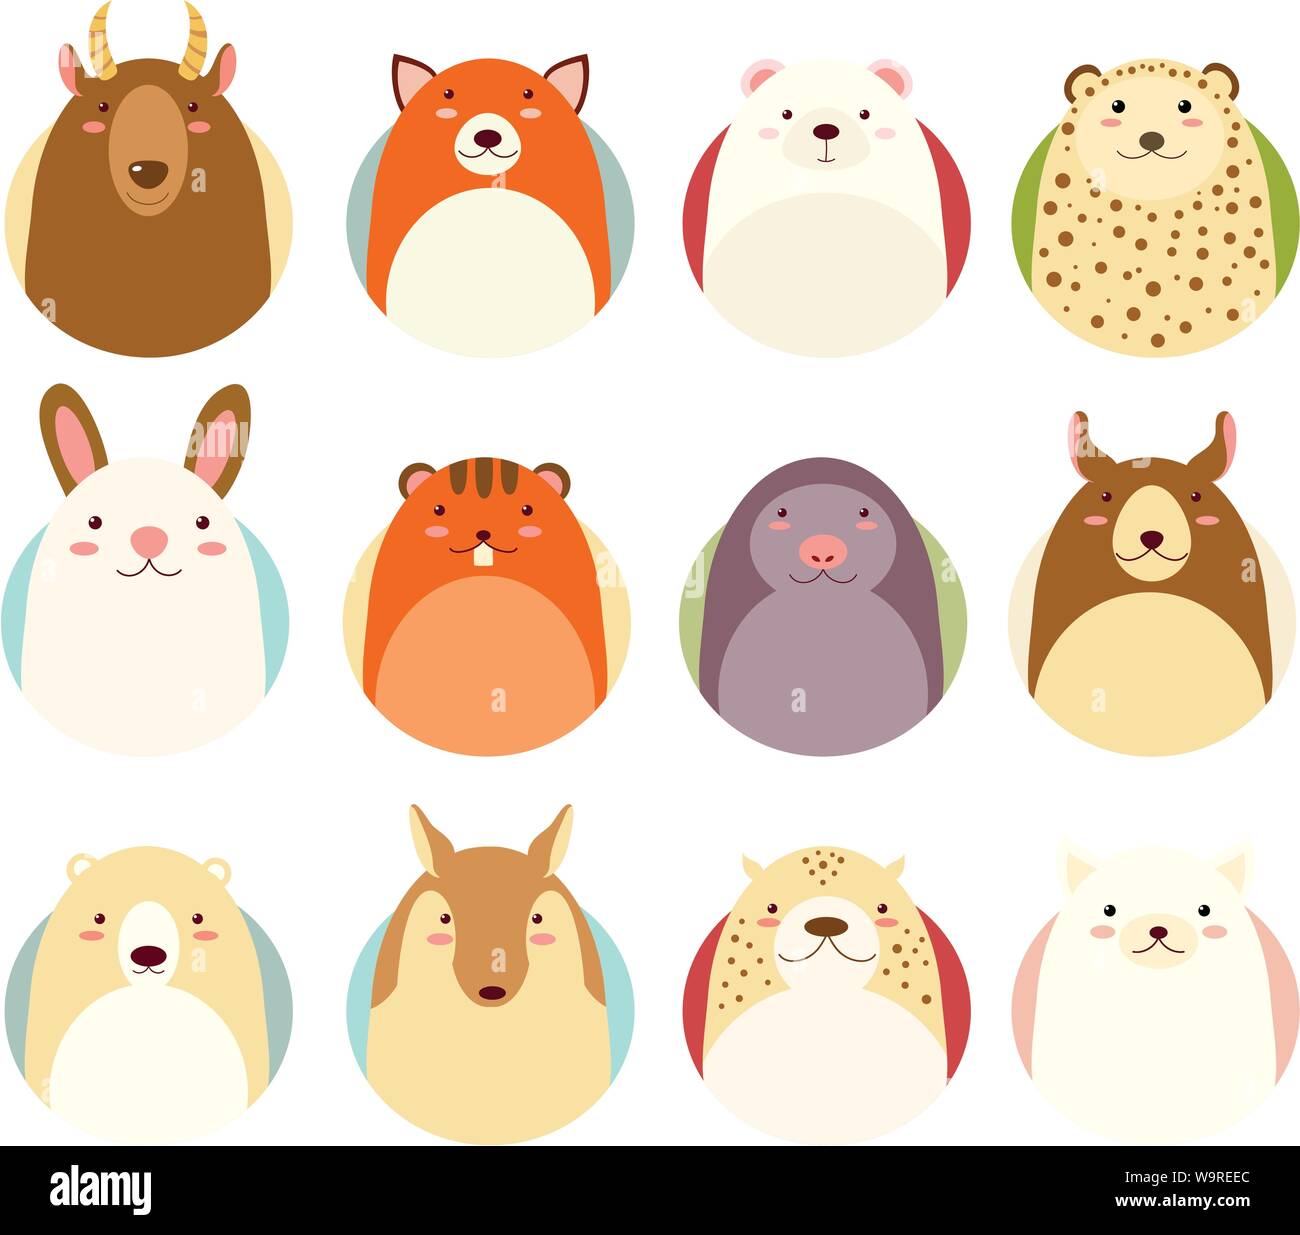 Ensemble d'avatars icônes de style naïf à la main avec des animaux dans des couleurs pastel. Spe8 Illustration de Vecteur